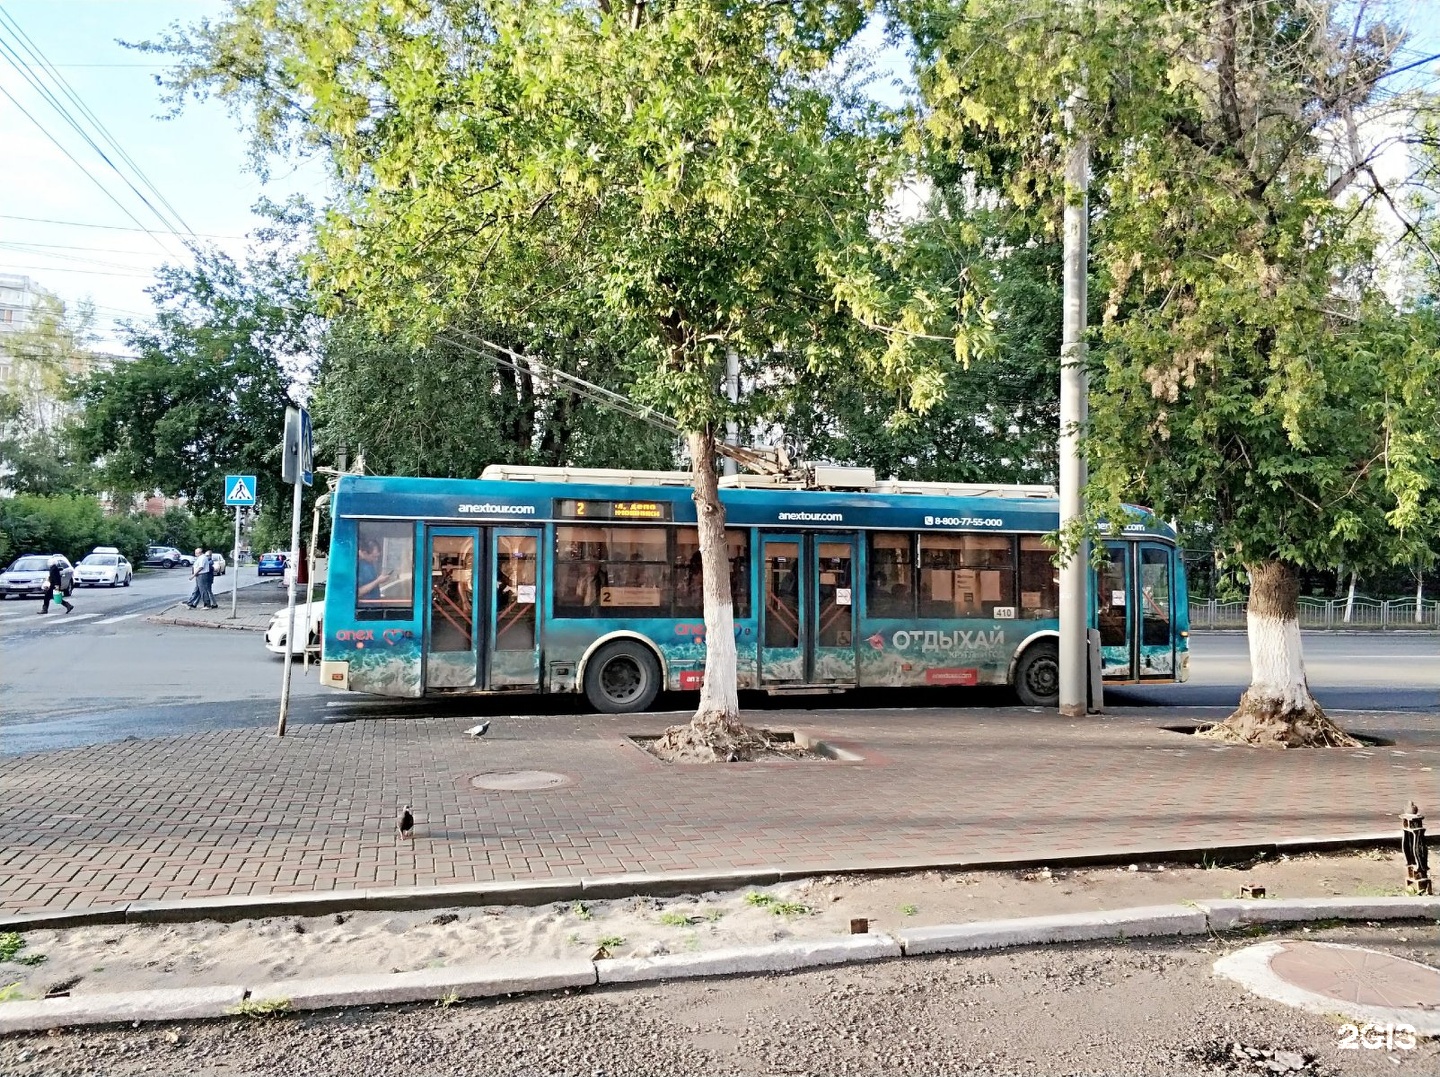 Троллейбус 2 гис